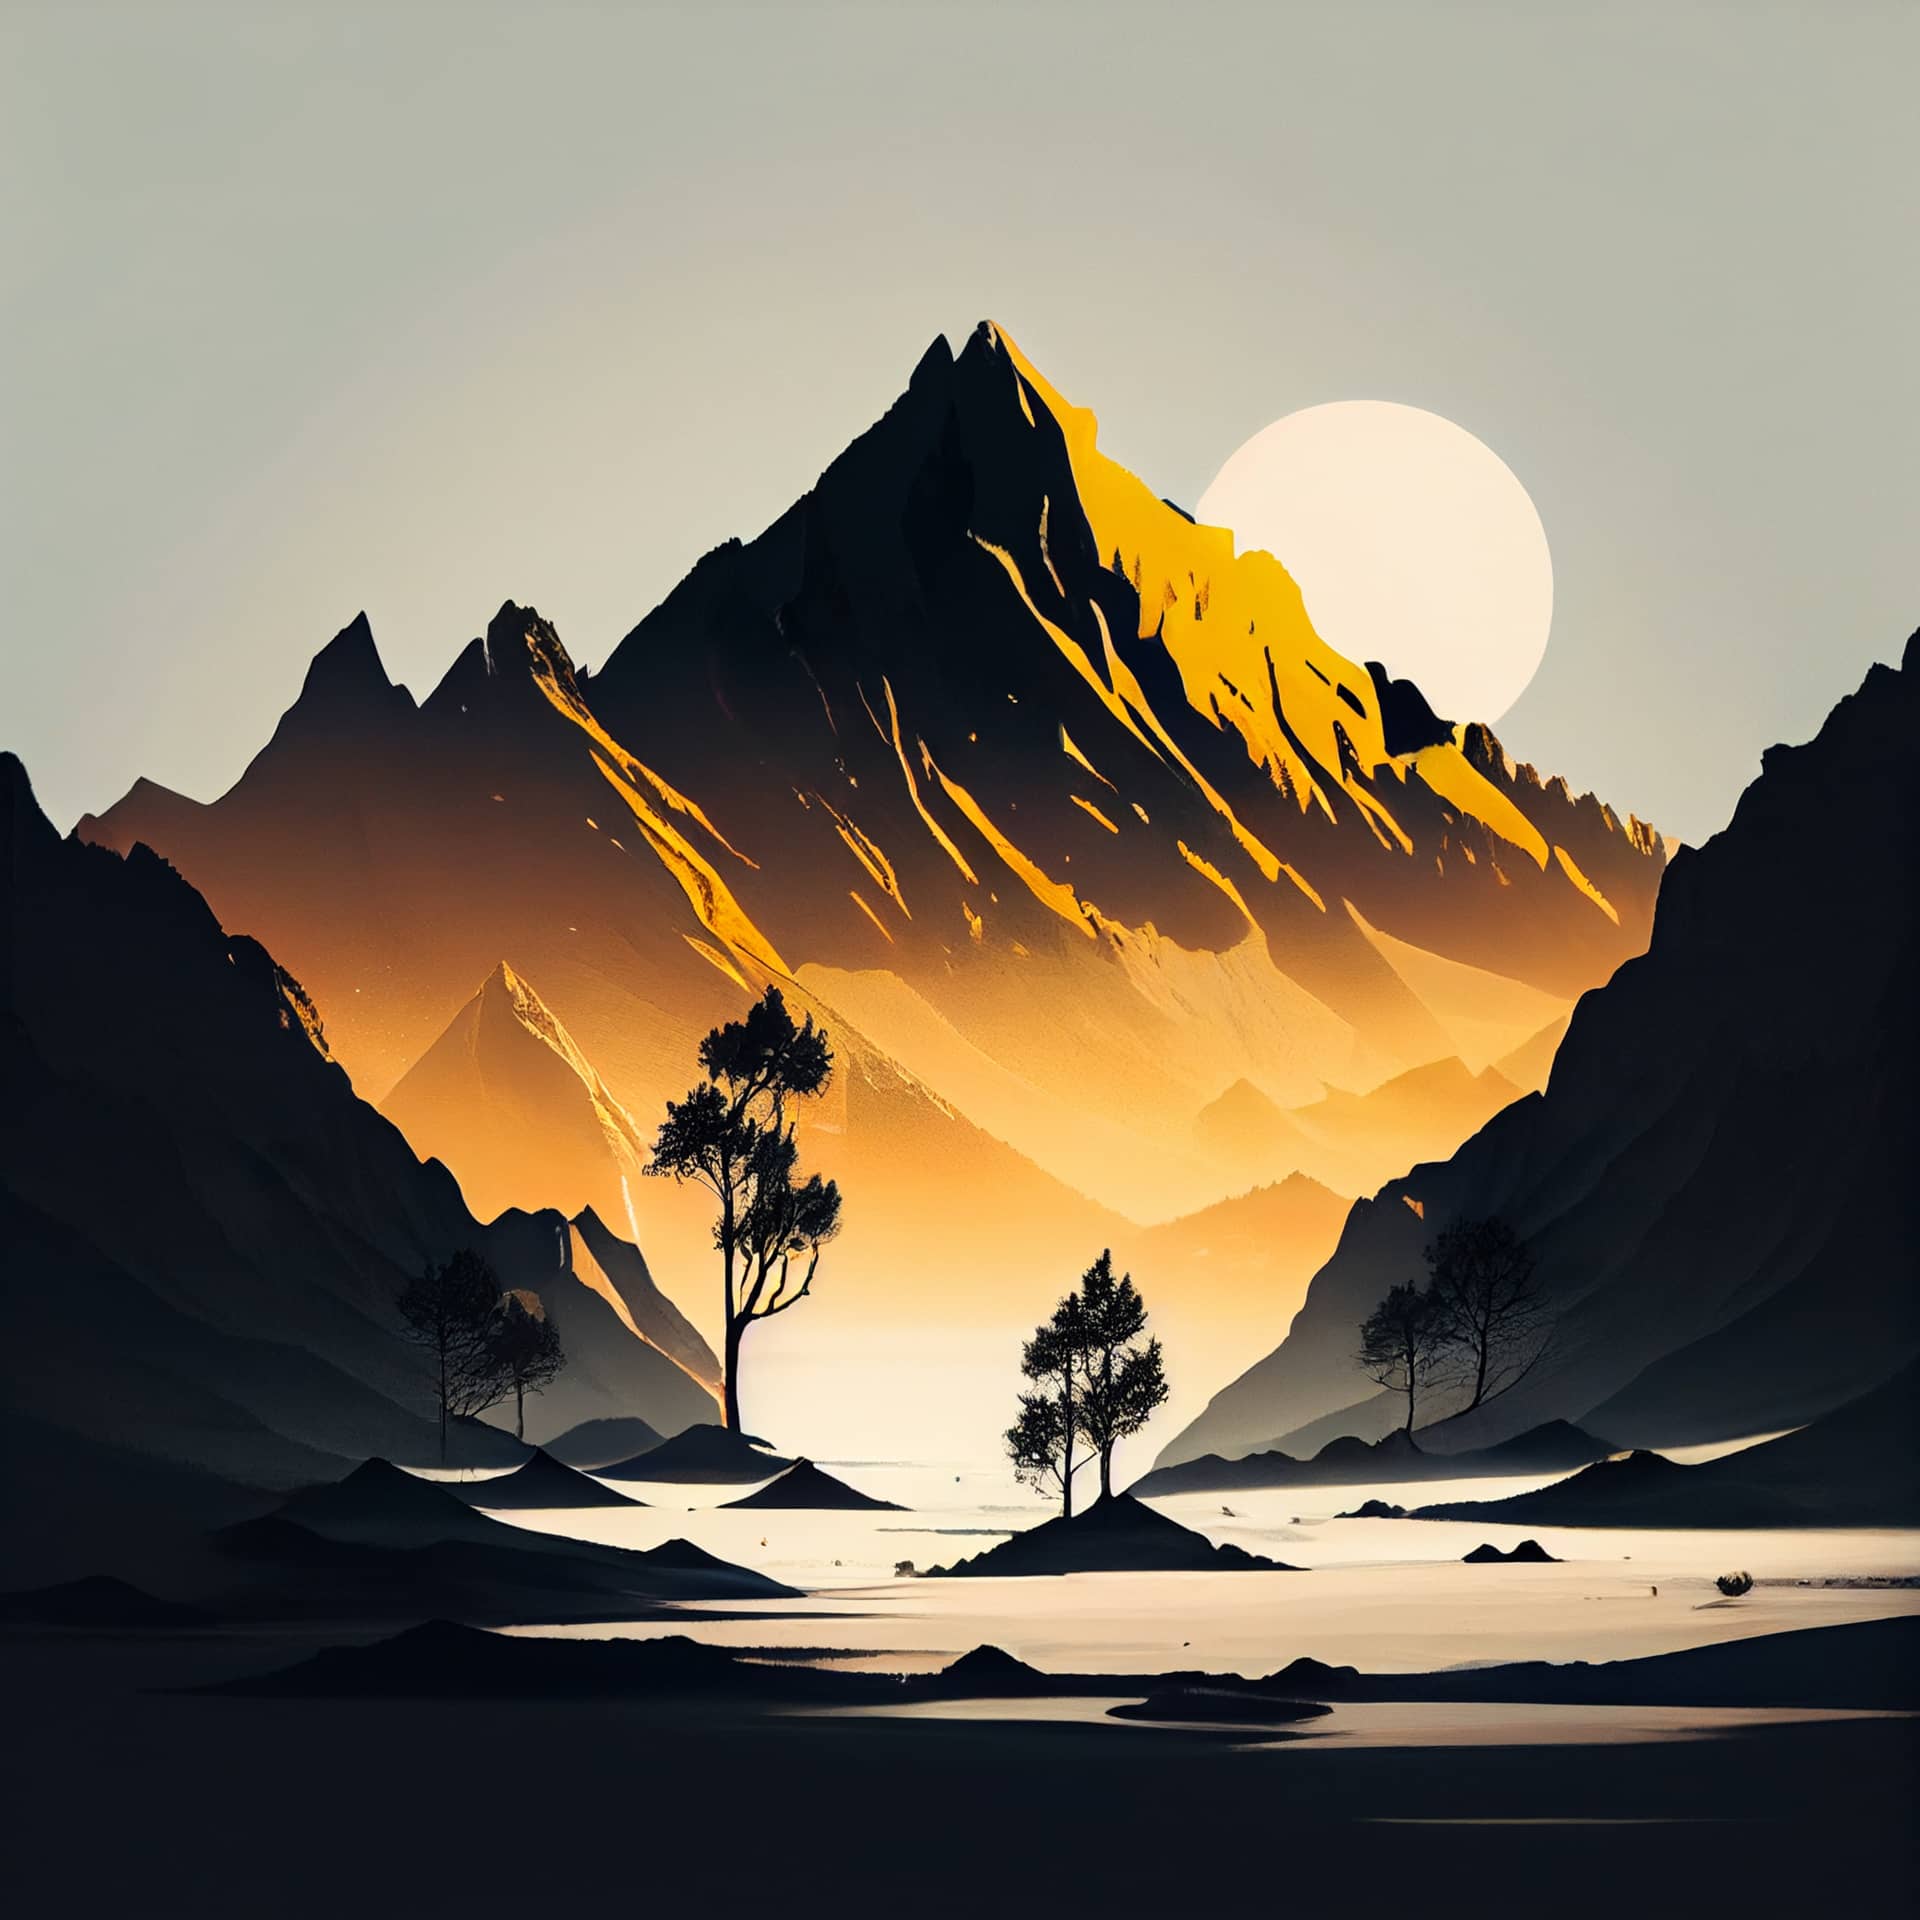 Nature profile picture mountain landscape imaginative image